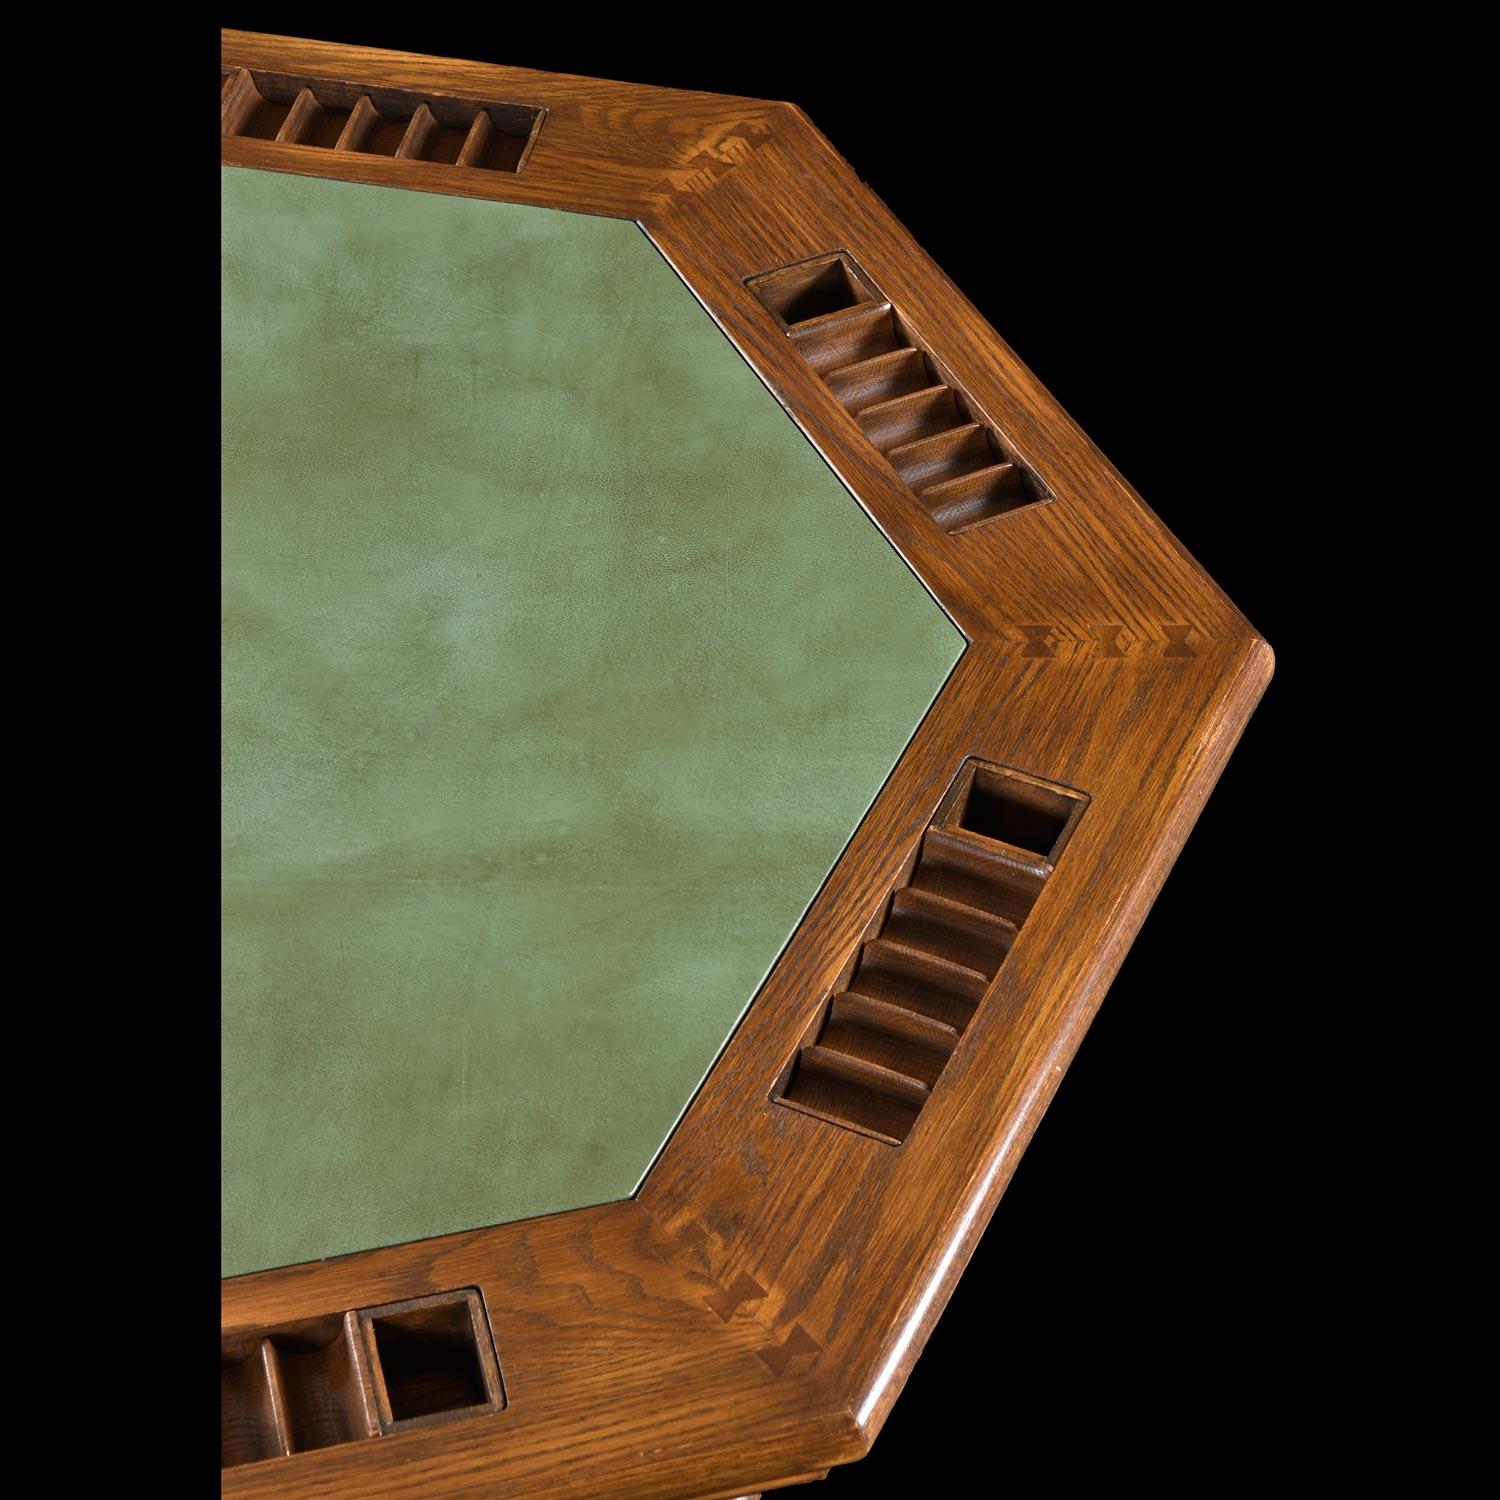 Rustic Classic 7-Player Viking Oak Poker Table Set by Romweber in Green Vinyl